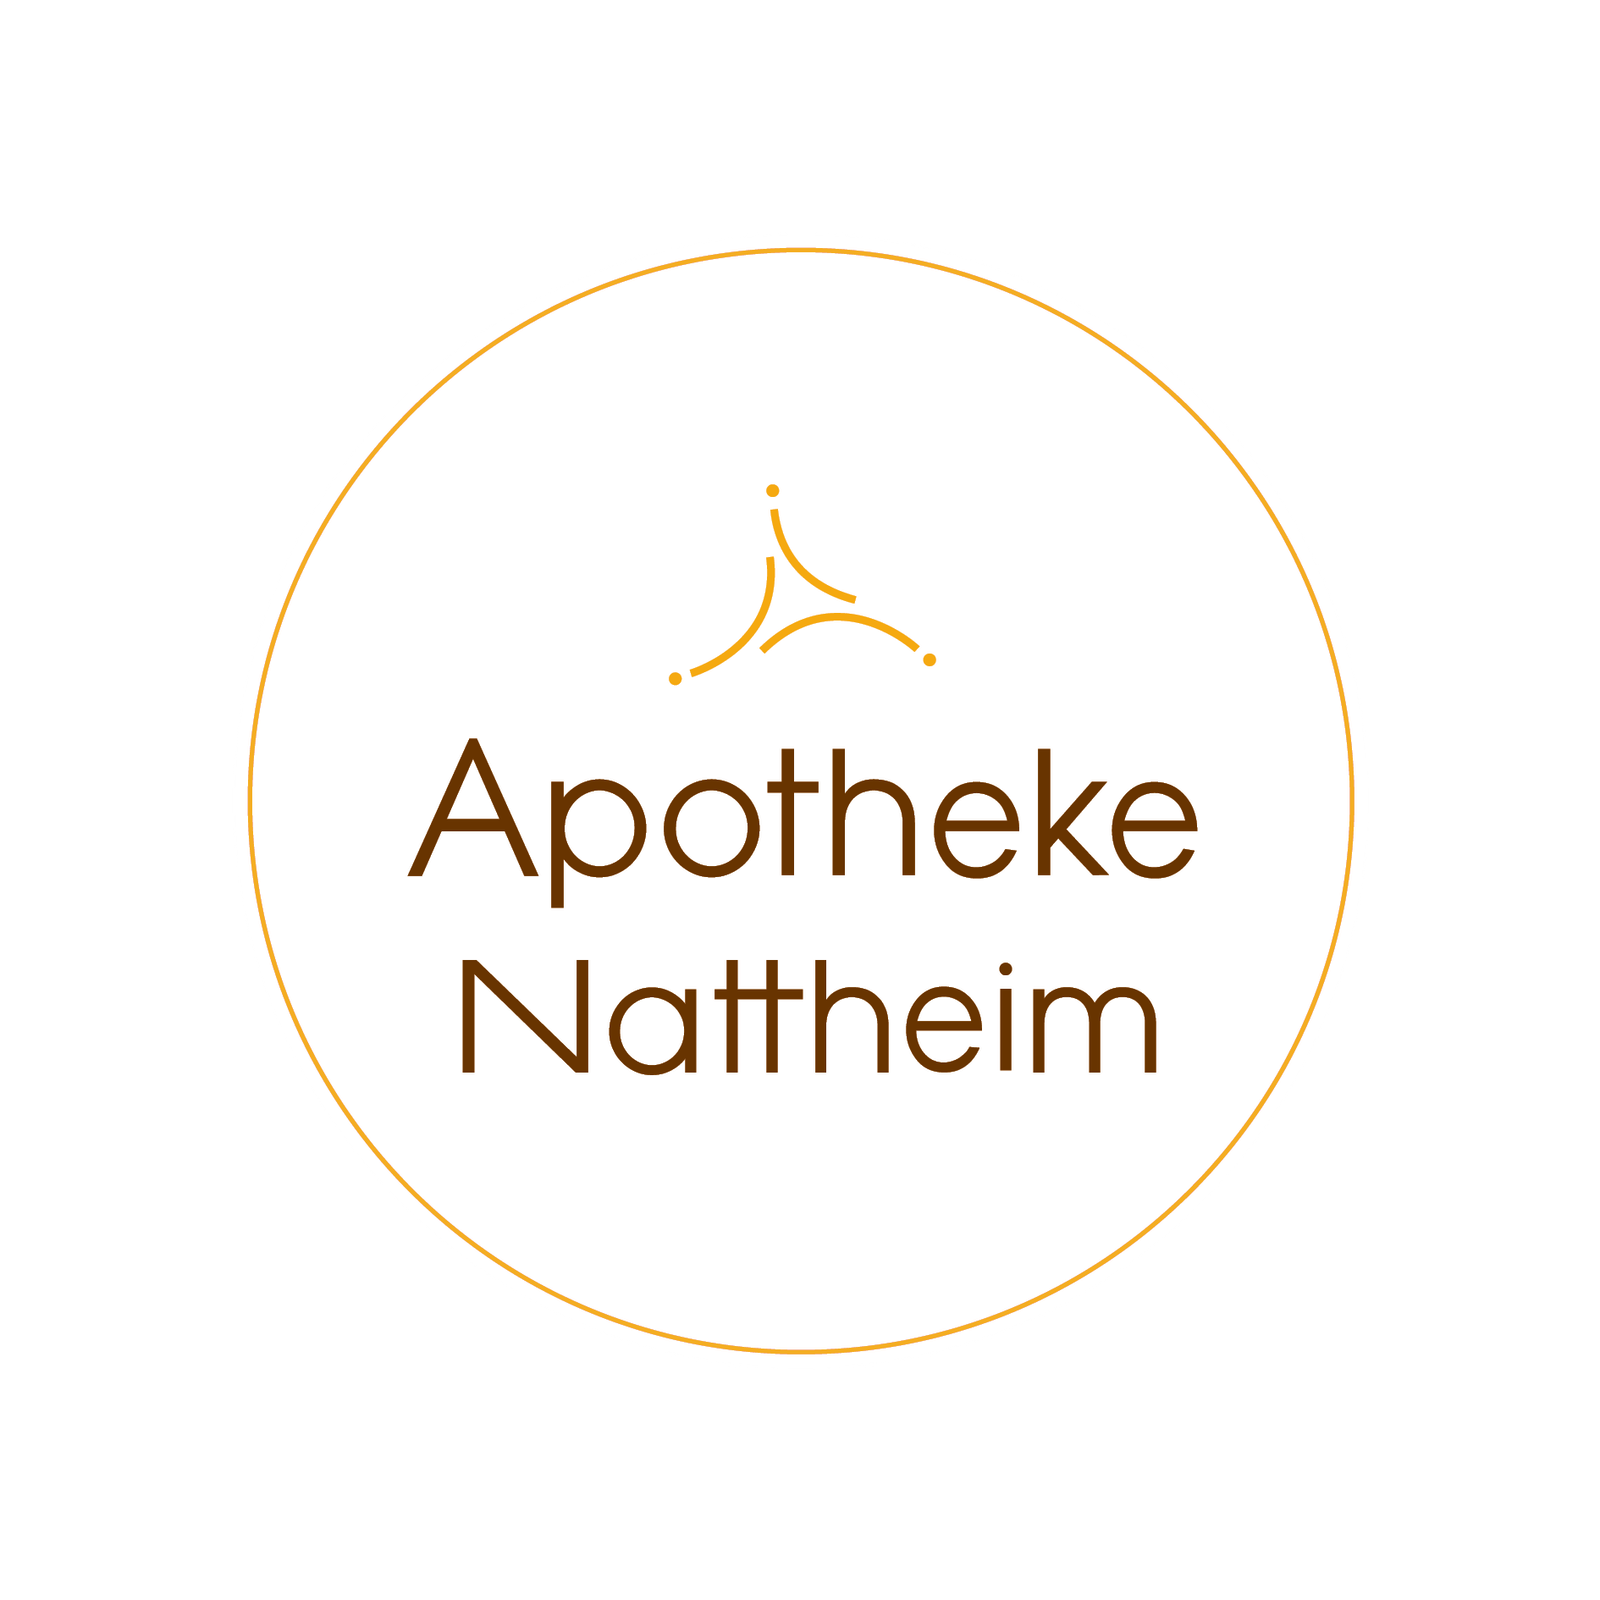 (c) Apotheke-nattheim.de